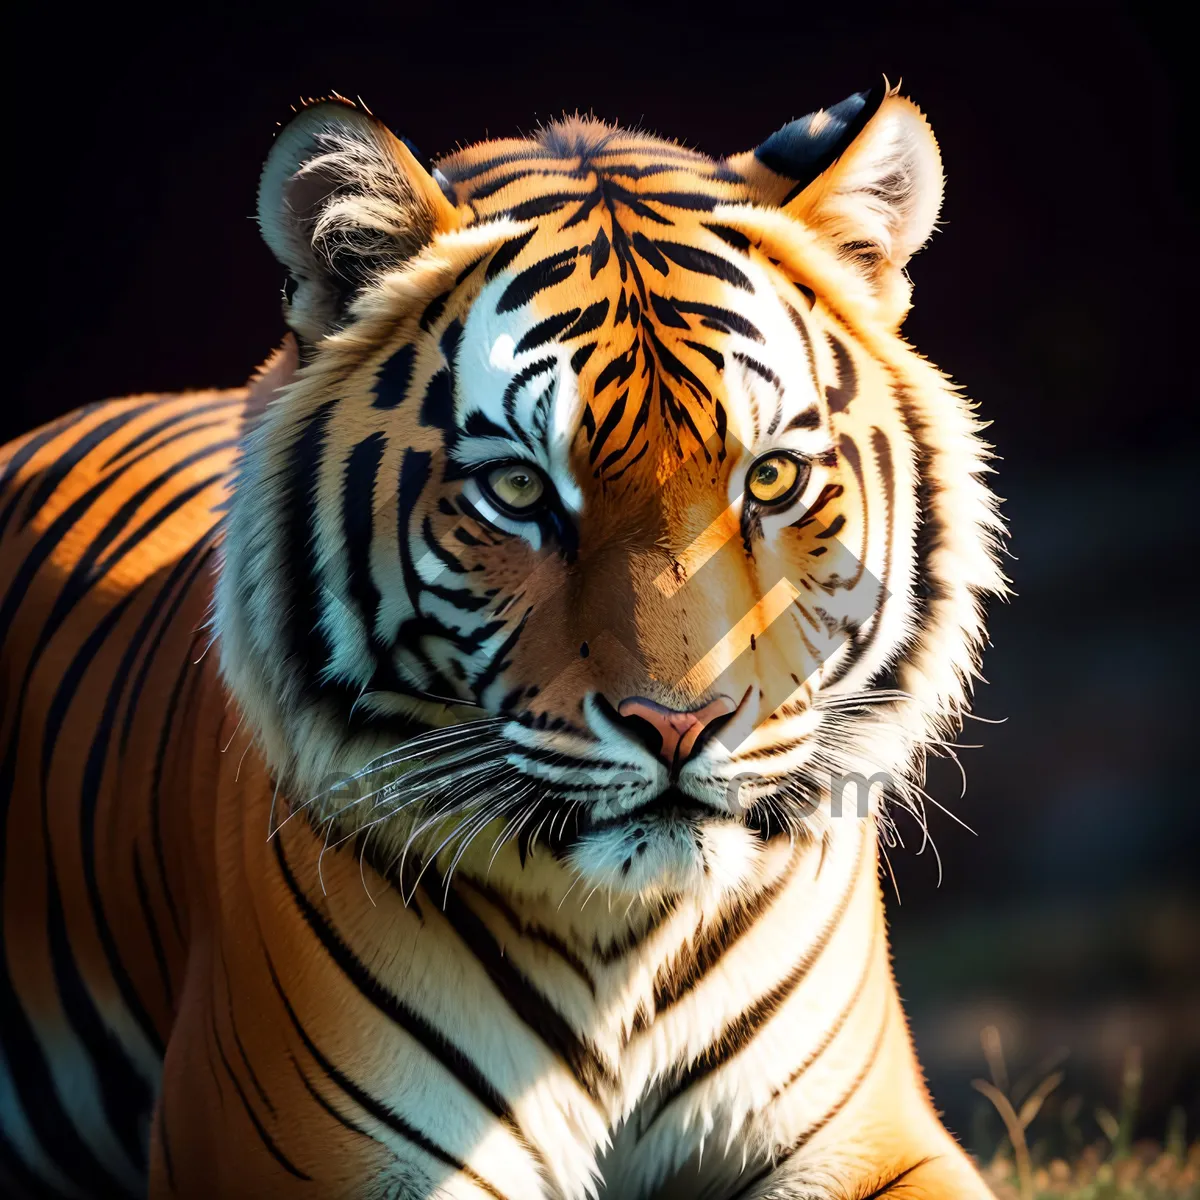 Picture of Striped Feline Predator: Majestic Tiger on Safari